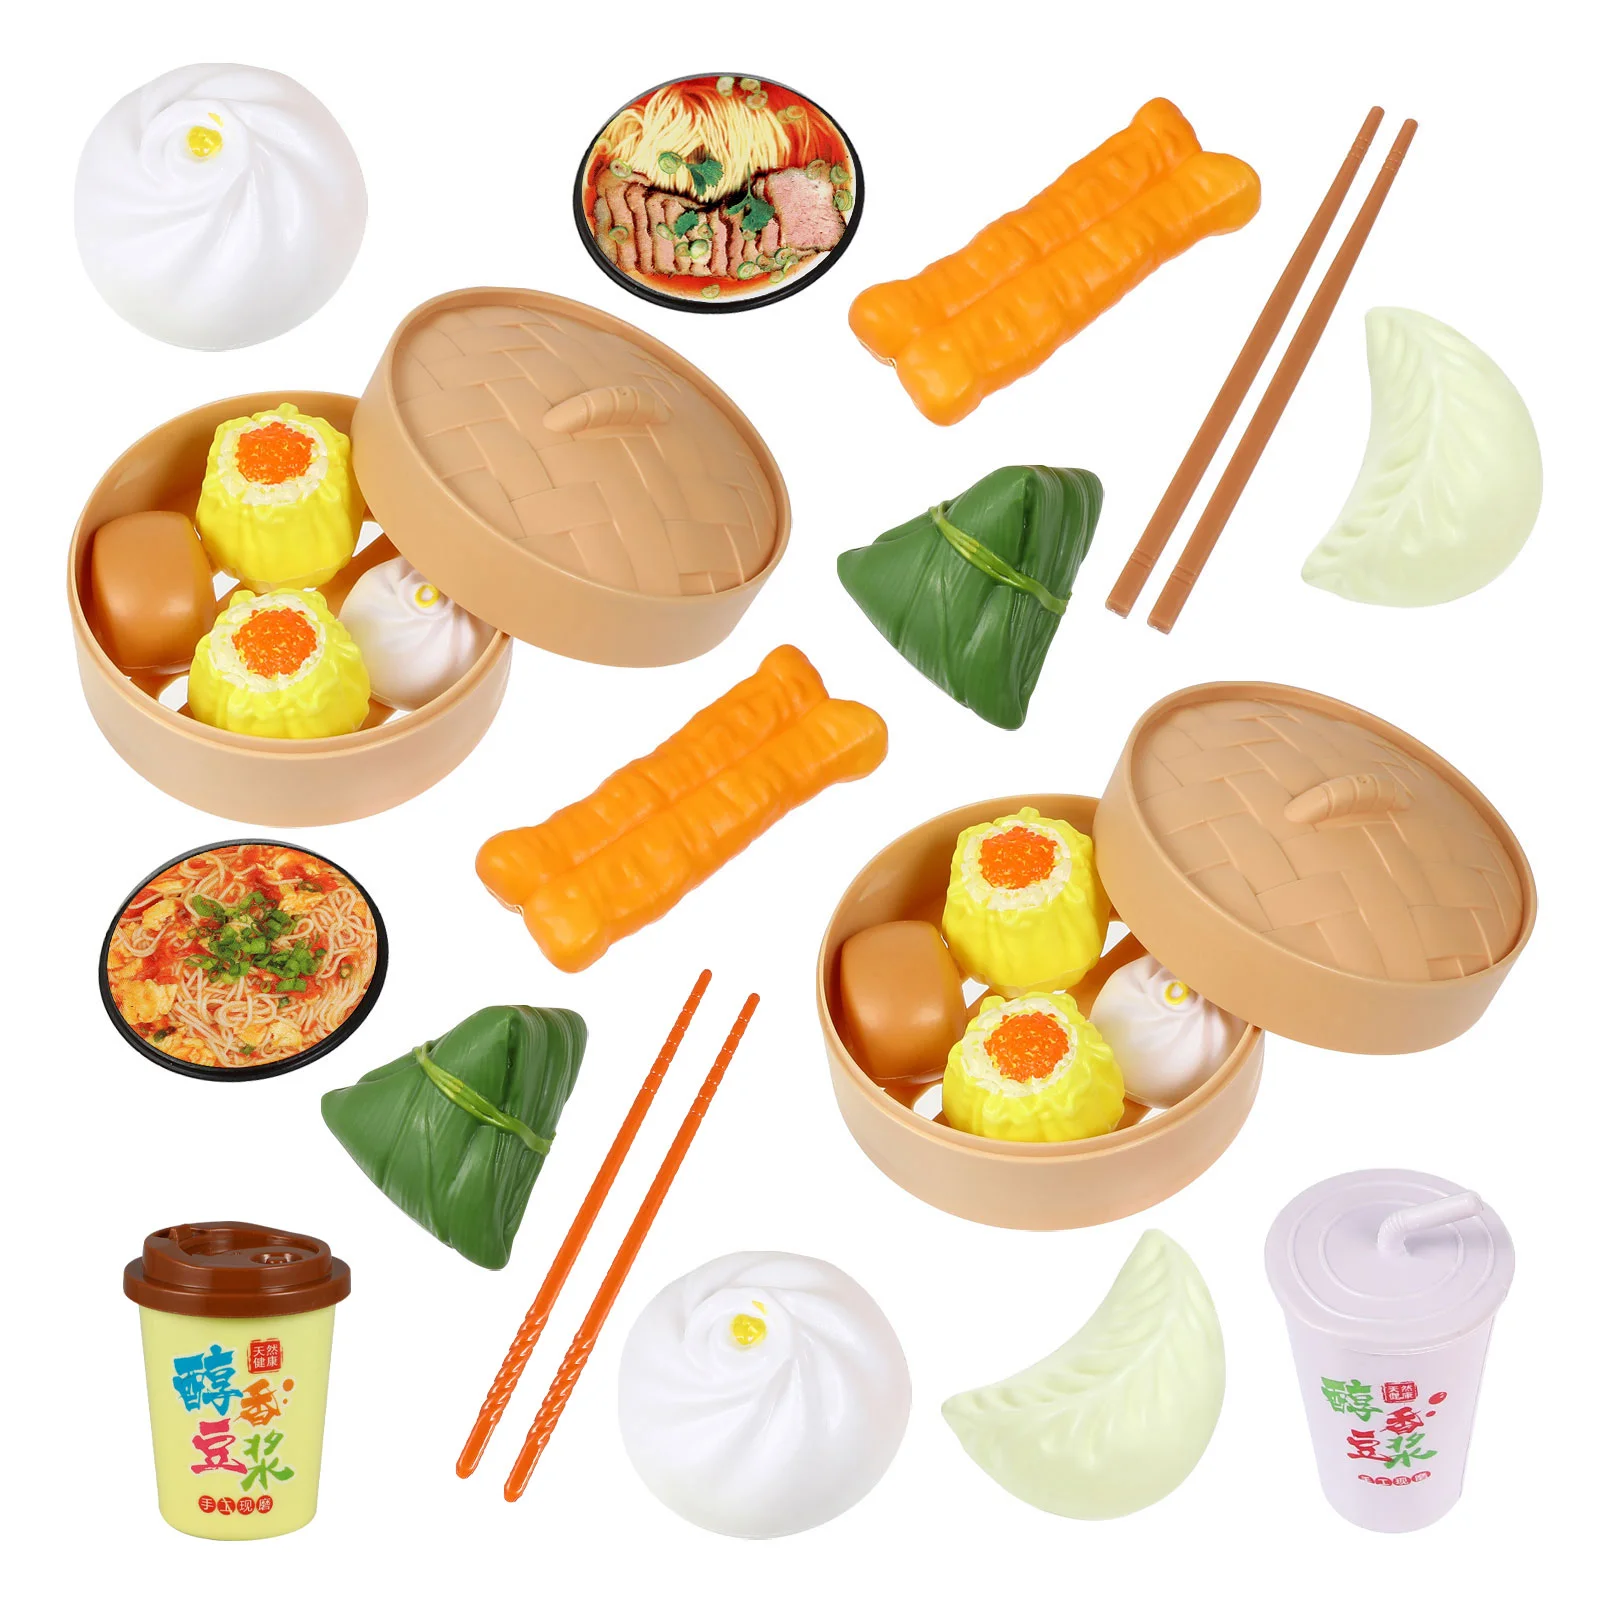 

Игрушка для еды, кухонные игрушки, детский китайский набор для ролевых игр на завтрак, искусственные мини-аксессуары для приготовления пищи...